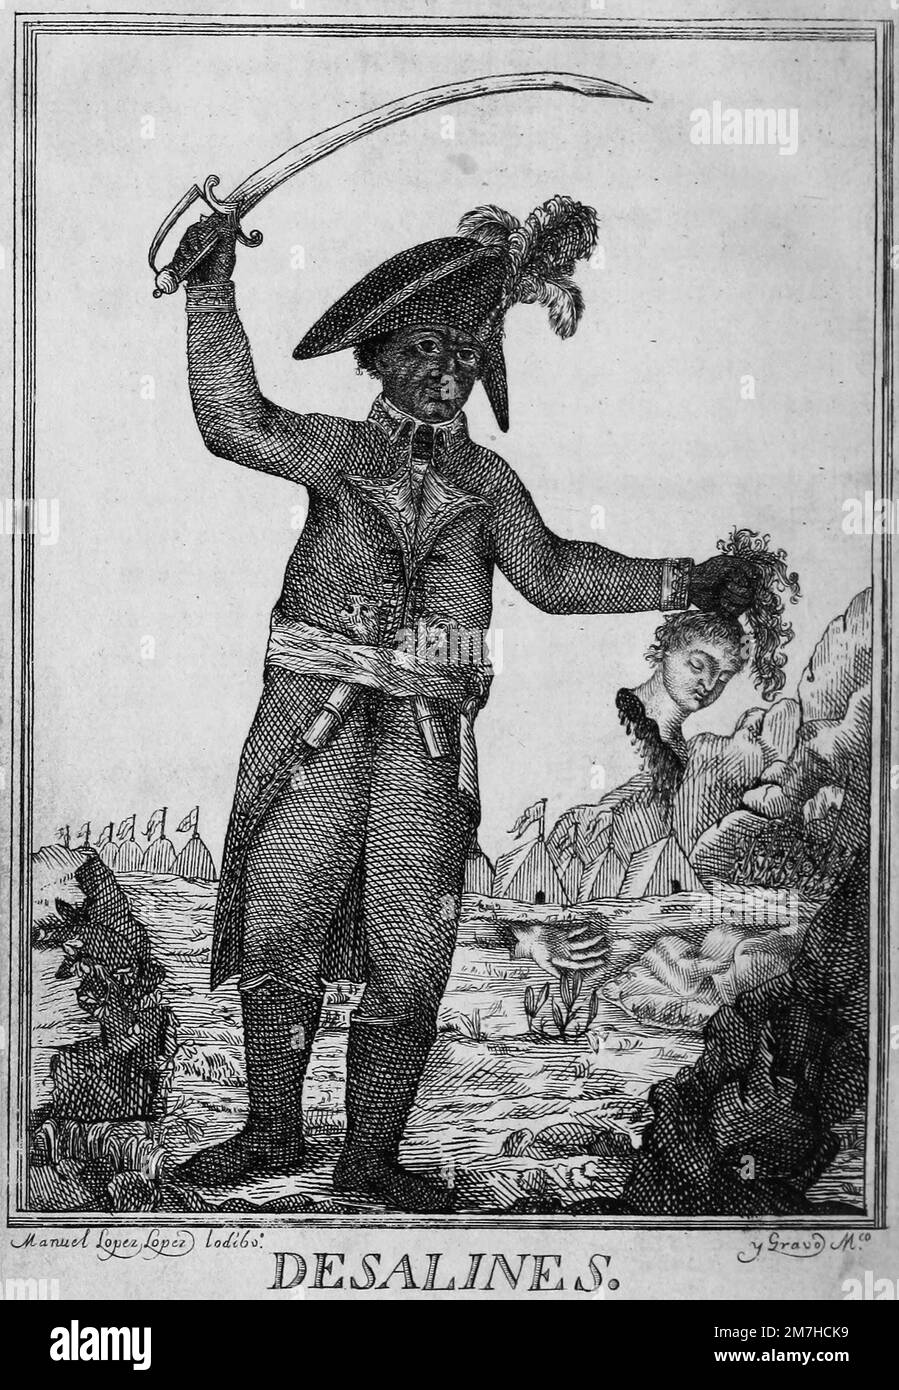 Une gravure de Jean-Jacques Dessalines en 1806. Il représente le général, l'épée soulevée dans un bras, tandis que l'autre tient la tête coupée d'une femme blanche. Dessalines était un chef pendant la Révolution haïtienne, le renversement sanglant de la domination blanche en Haïti et devint le premier empereur d'un Haïti indépendant. Banque D'Images